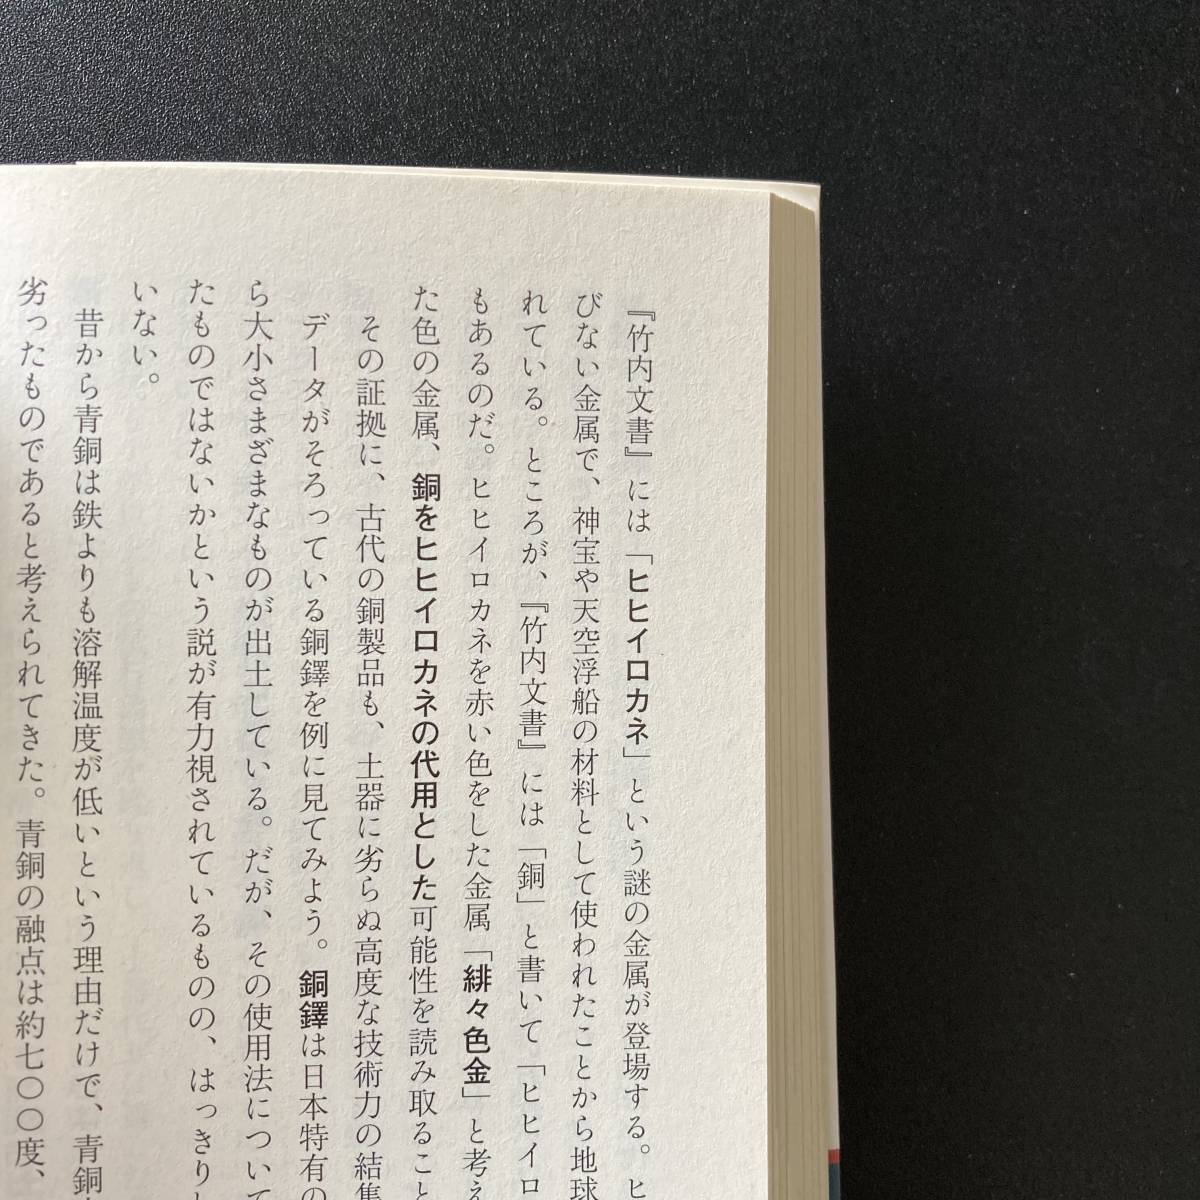  Takeuchi документ : мир . один . делать земля самый старый. ..(5 следующий изначальный библиотека ) / высота склон мир .( работа )